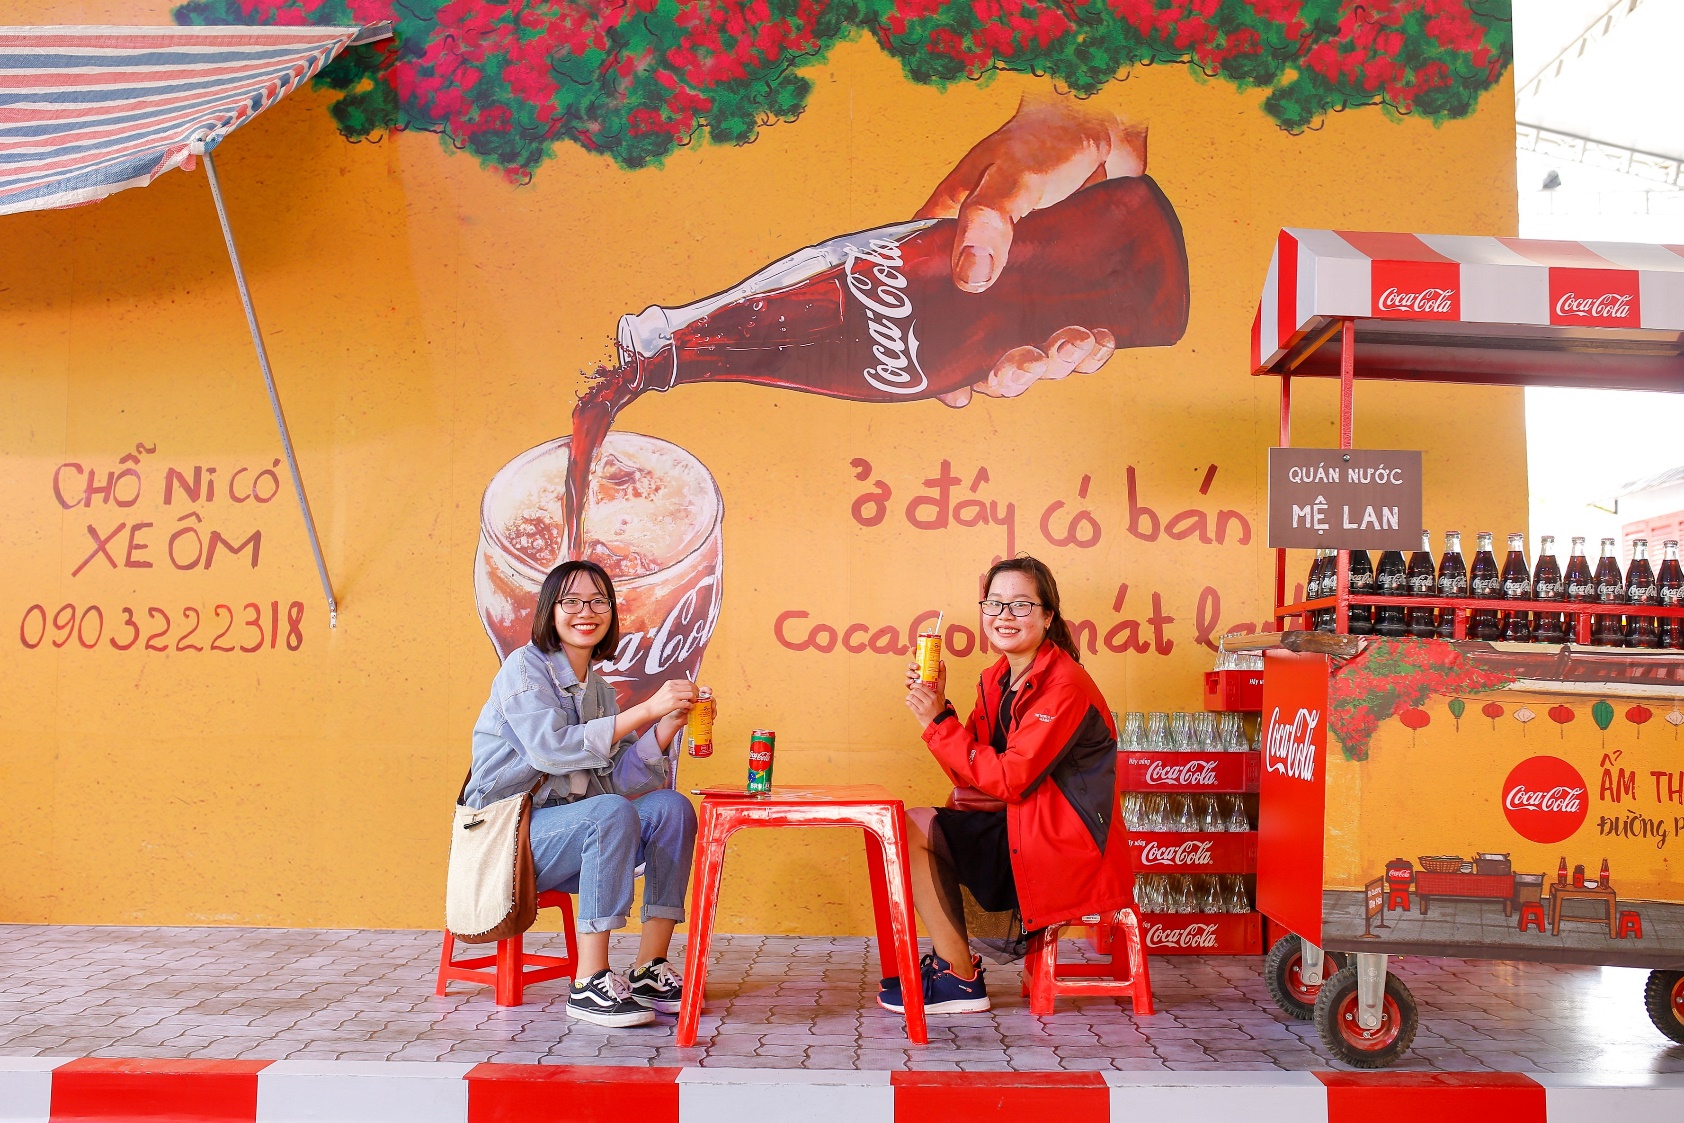 Những khoảnh khắc đẹp tại lễ hội ẩm thực đường phố Đà Nẵng - Ảnh 2.